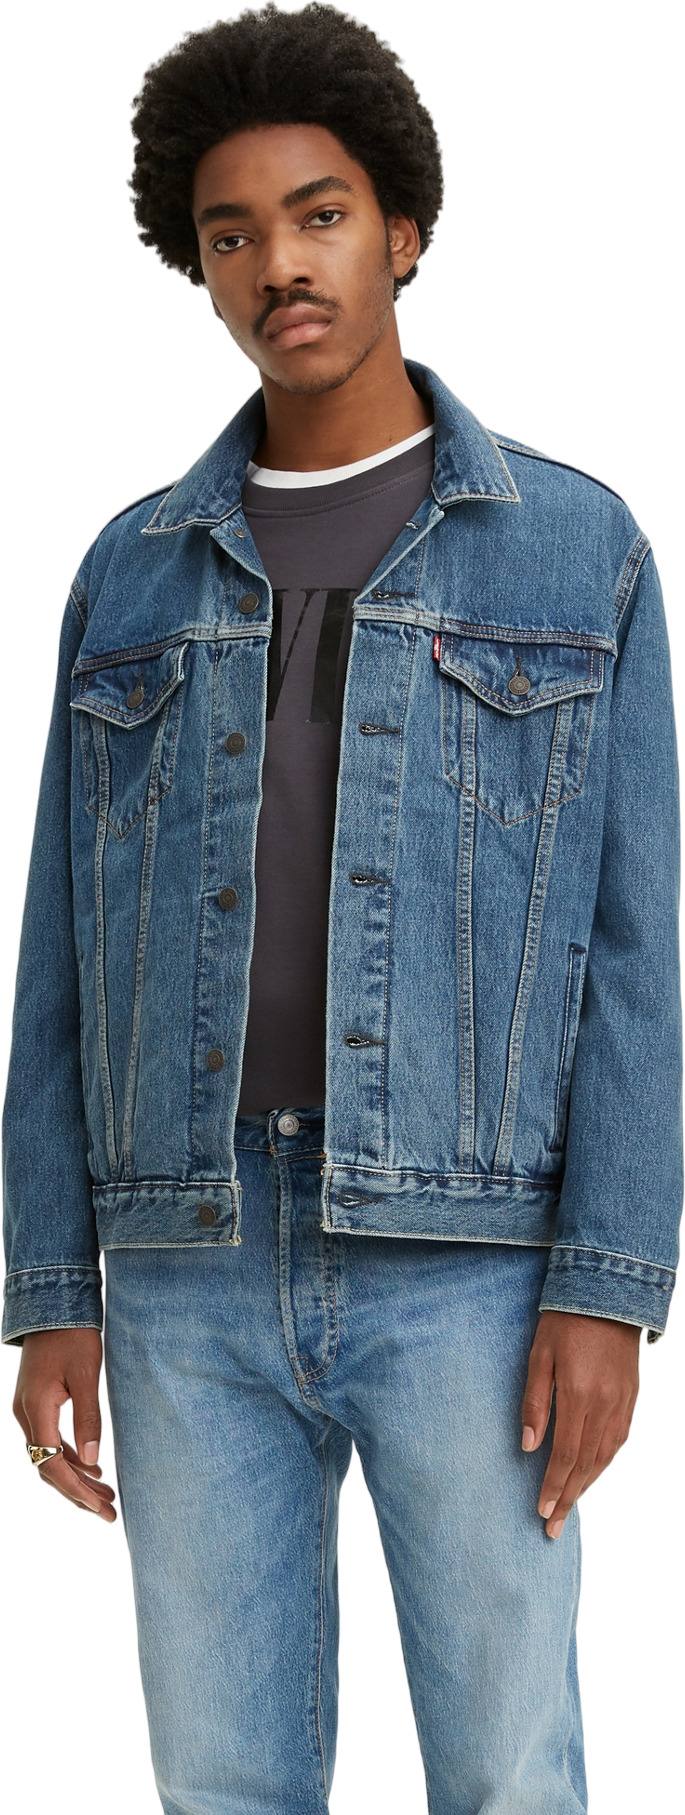 Джинсовая куртка мужская Levi's Men The Trucker Jacket синяя XL